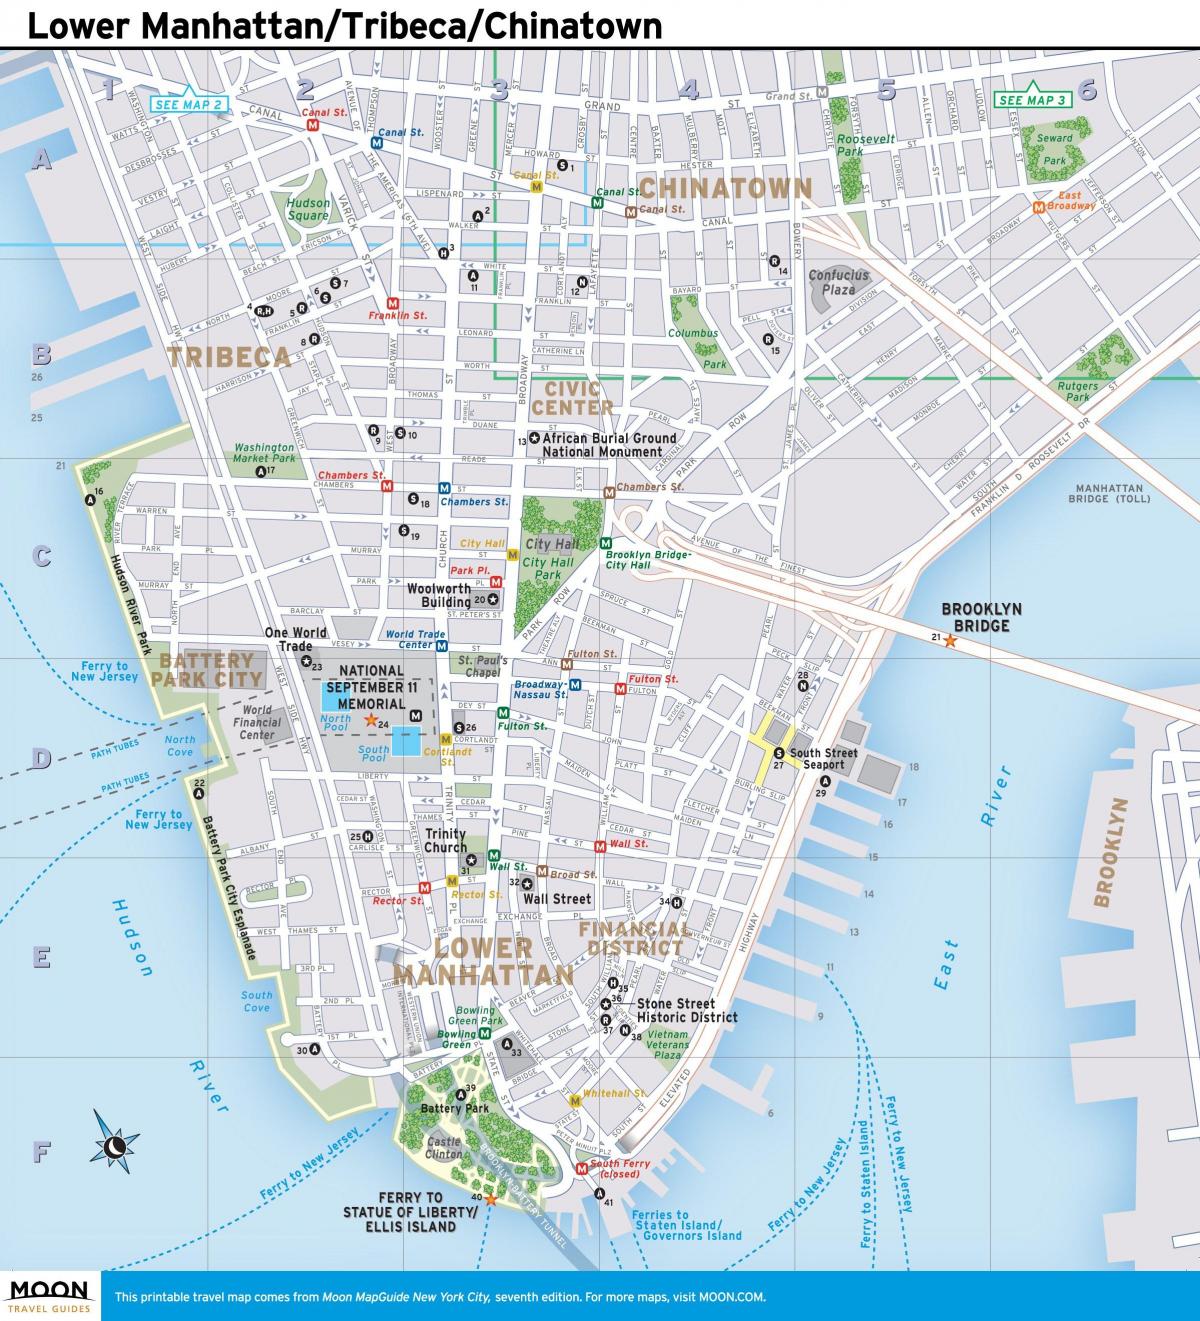 zemljevid spodnji Manhattan ny